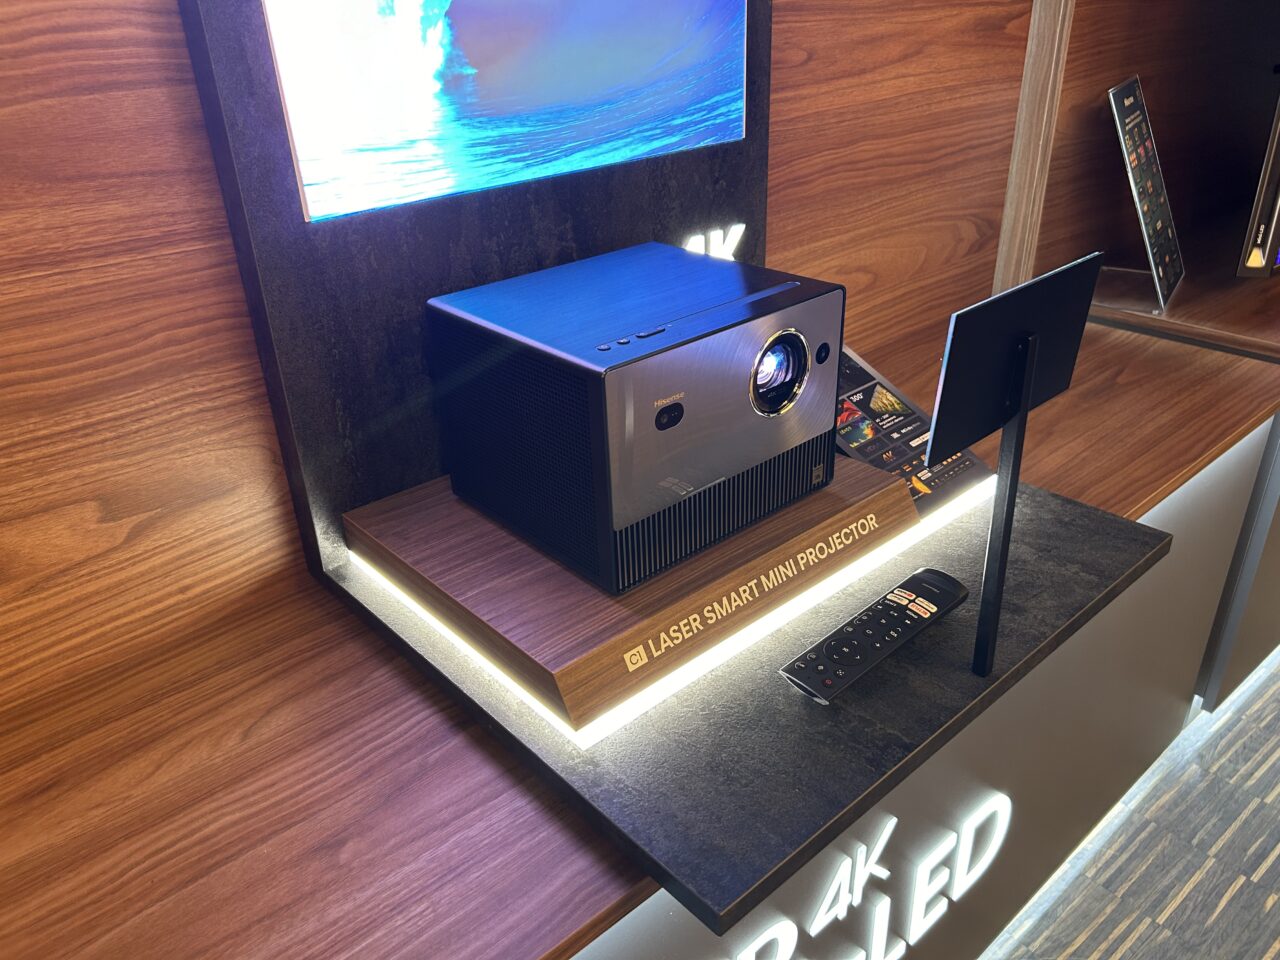 Projektor laserowy smart mini ustawiony na wystawie w sklepie, obok ekran z wyświetlanym obrazem, z pilotem i broszurami informacyjnymi.